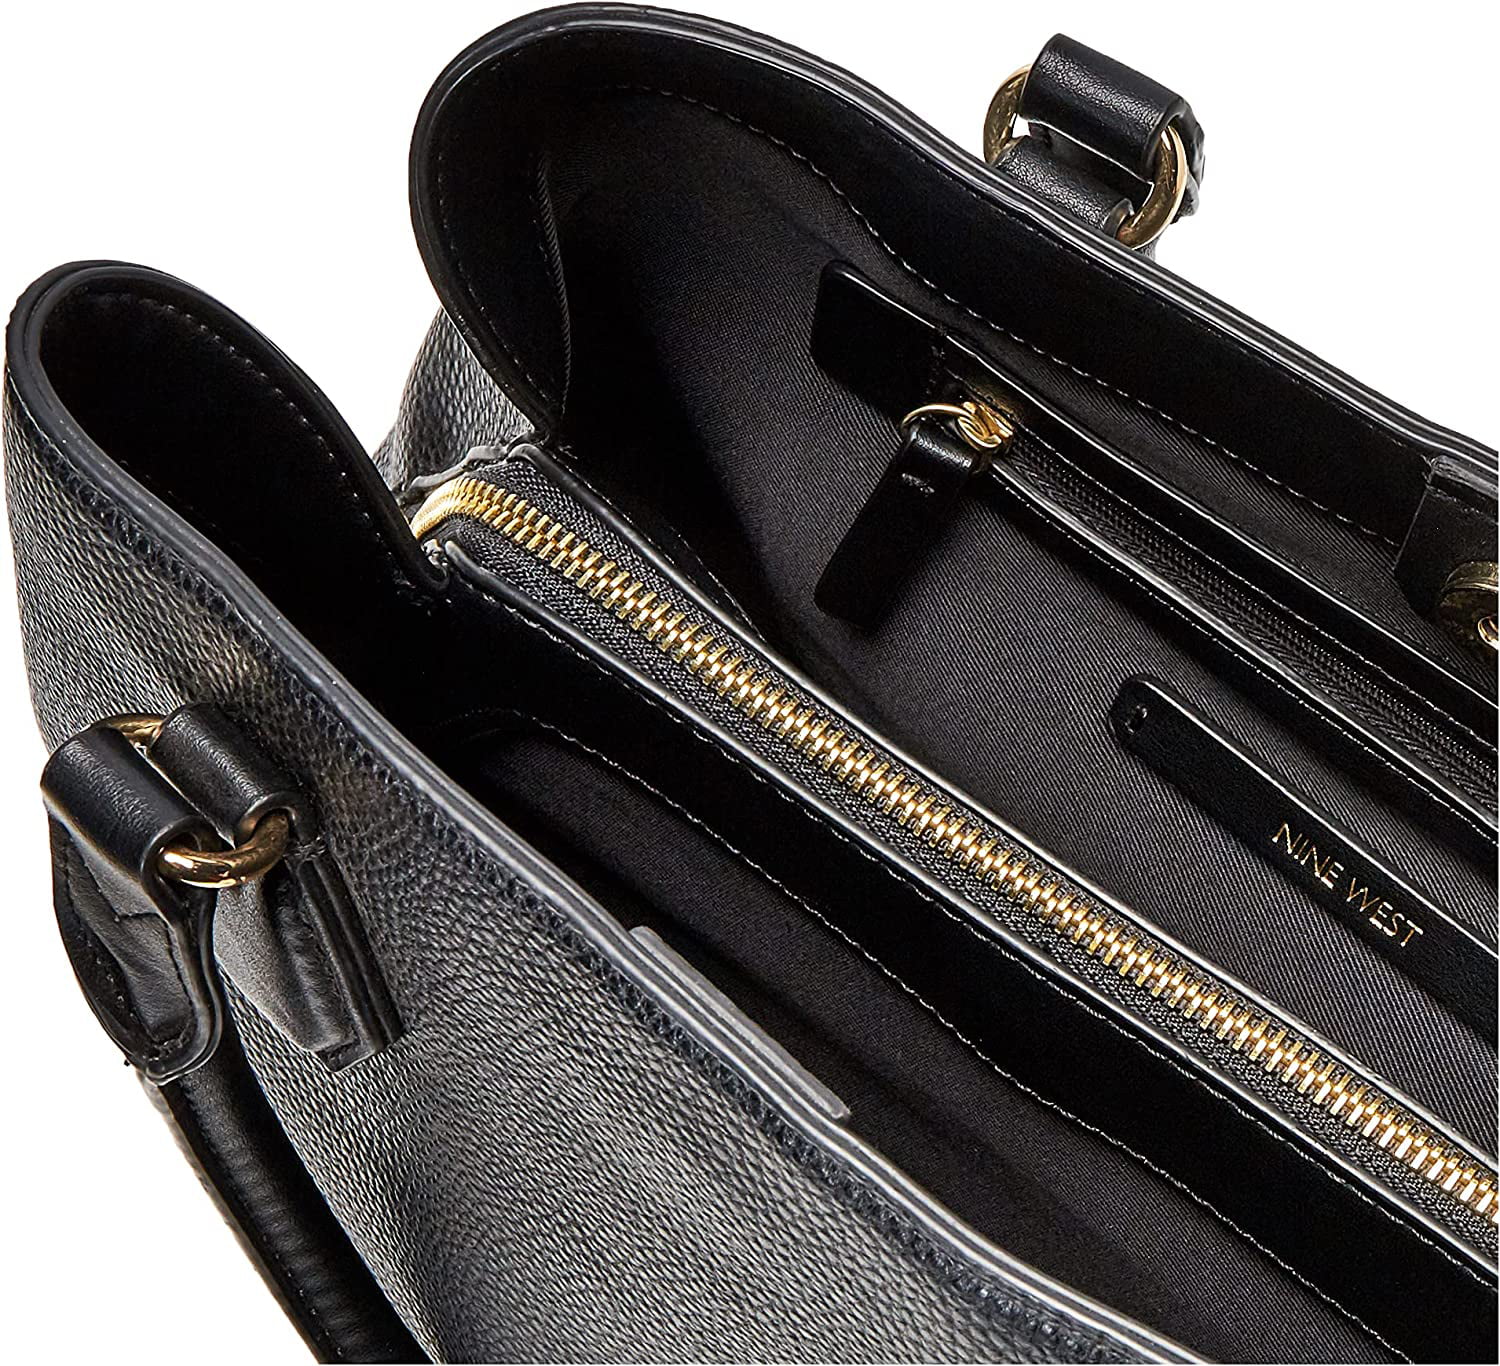 Nine West purse | Nine west purses, Purses, Shoulder bag